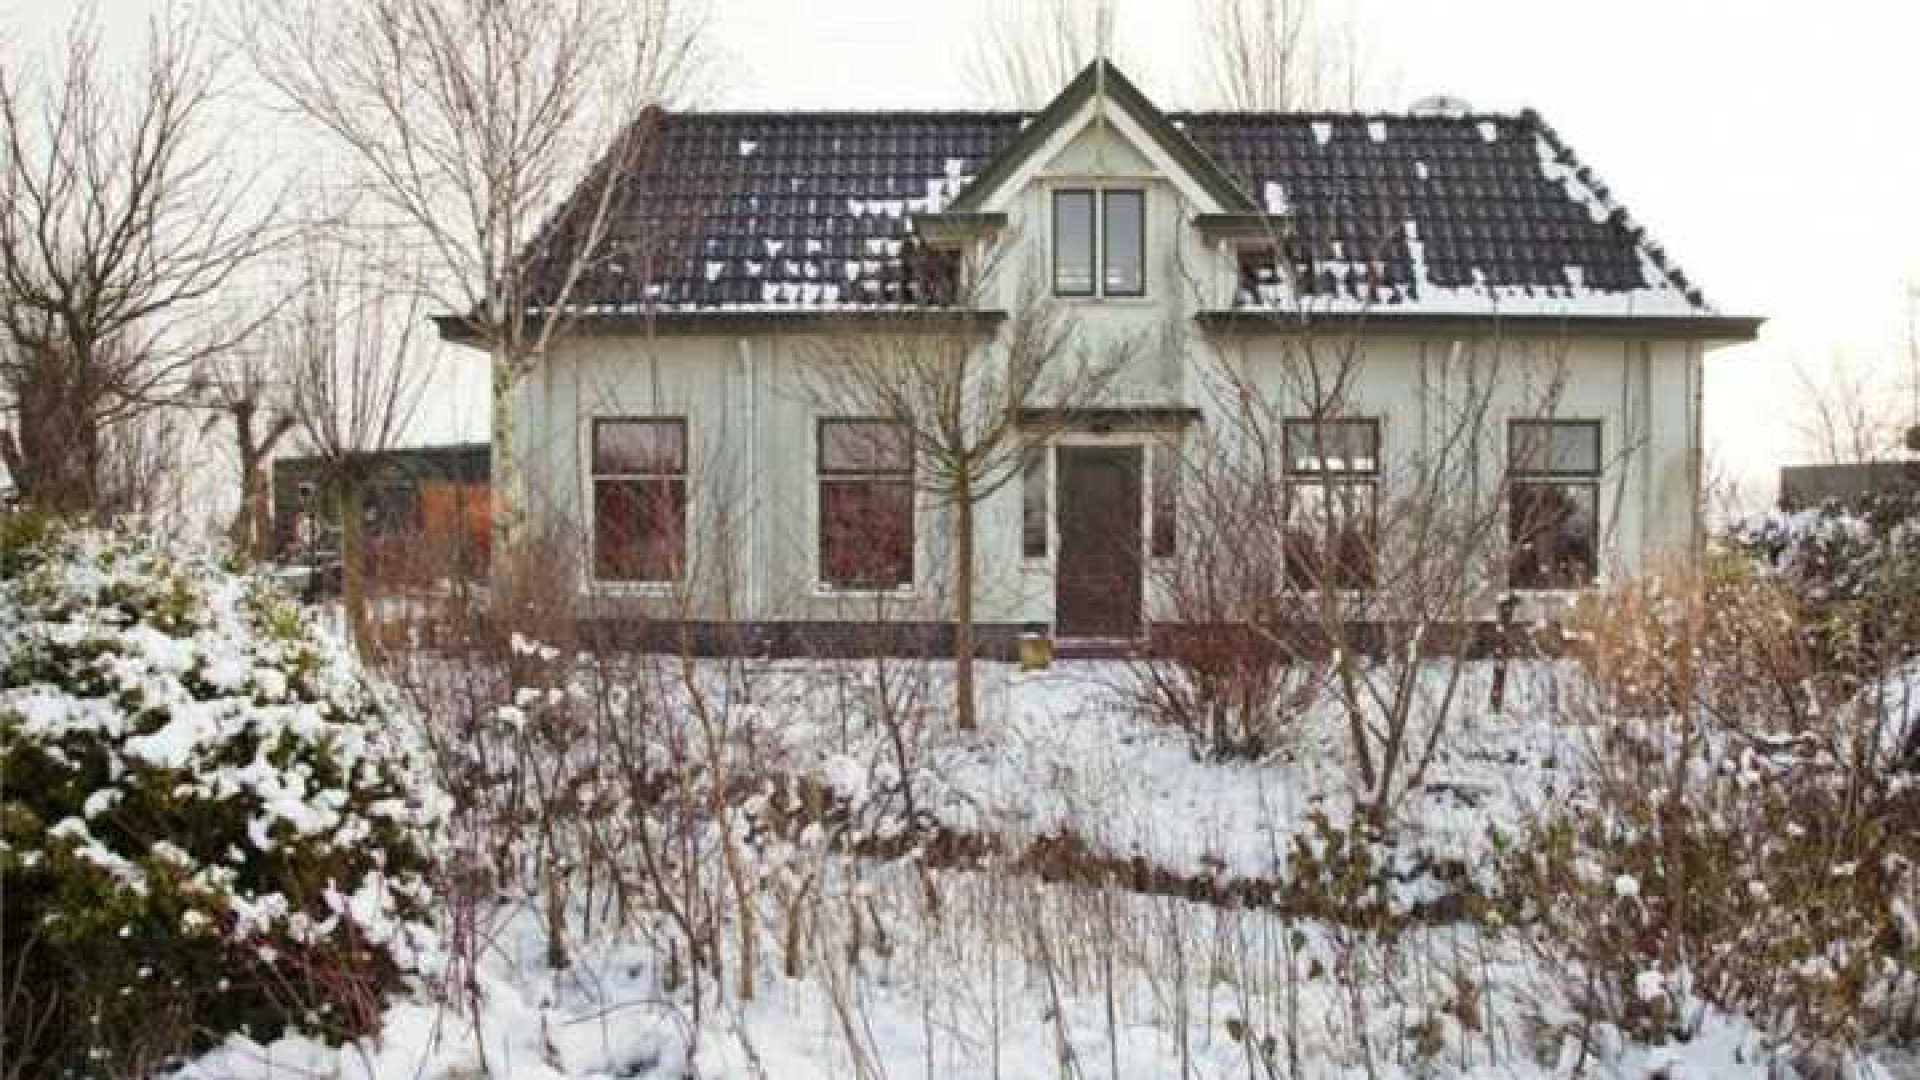 Huis verkocht, maar diepe armoede dreigt nu voor ex van Peter Jan Rens! 1